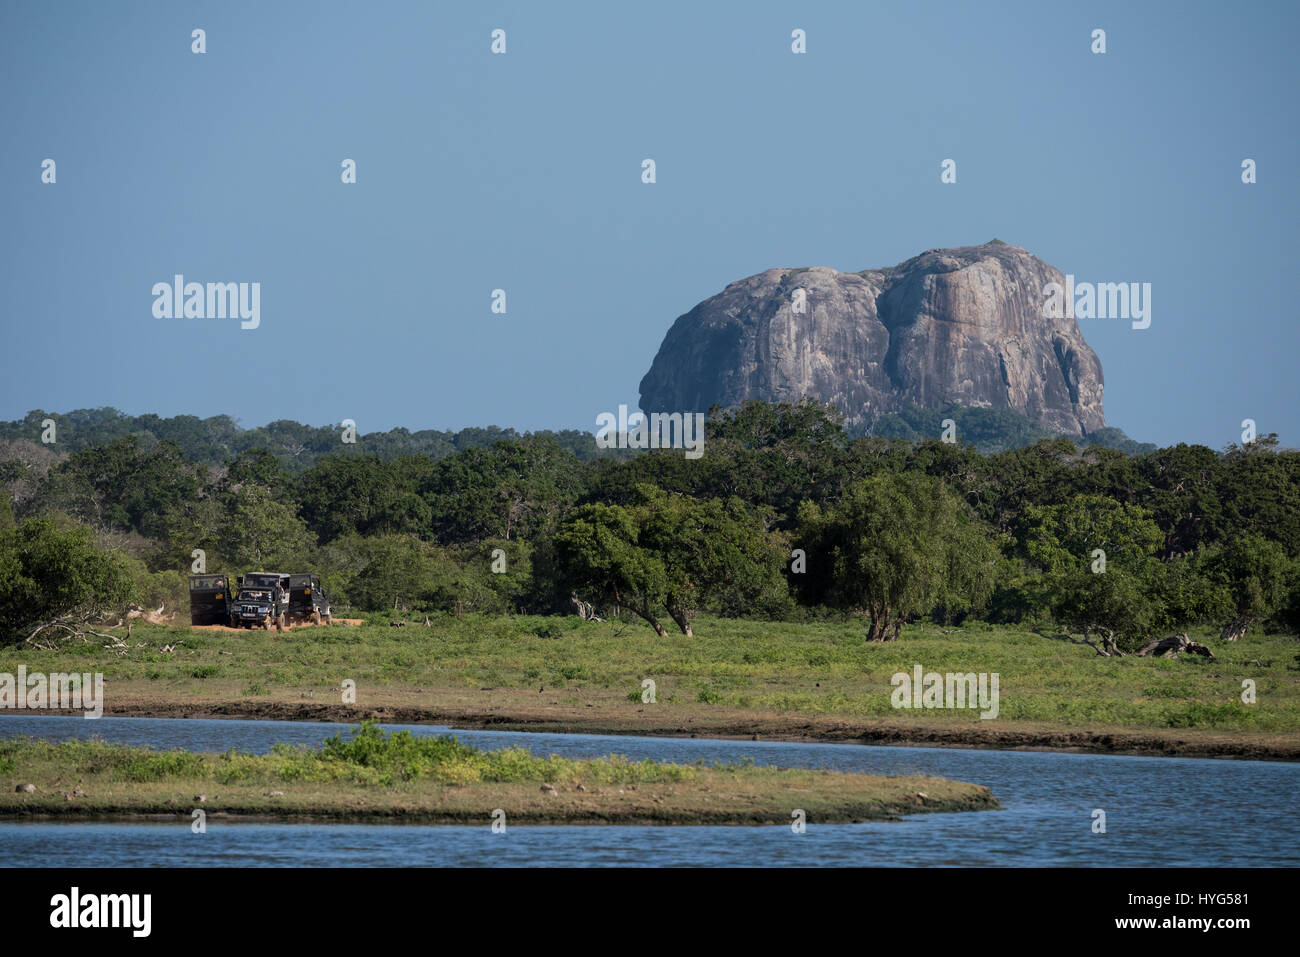 Sri Lanka, Yala-Nationalpark 1900 aka Ruhuna National Park (Block 1) gegründet. Malerische Aussicht auf Wahrzeichen Elephant Rock, Pirschfahrt Jeep unterwegs. Stockfoto